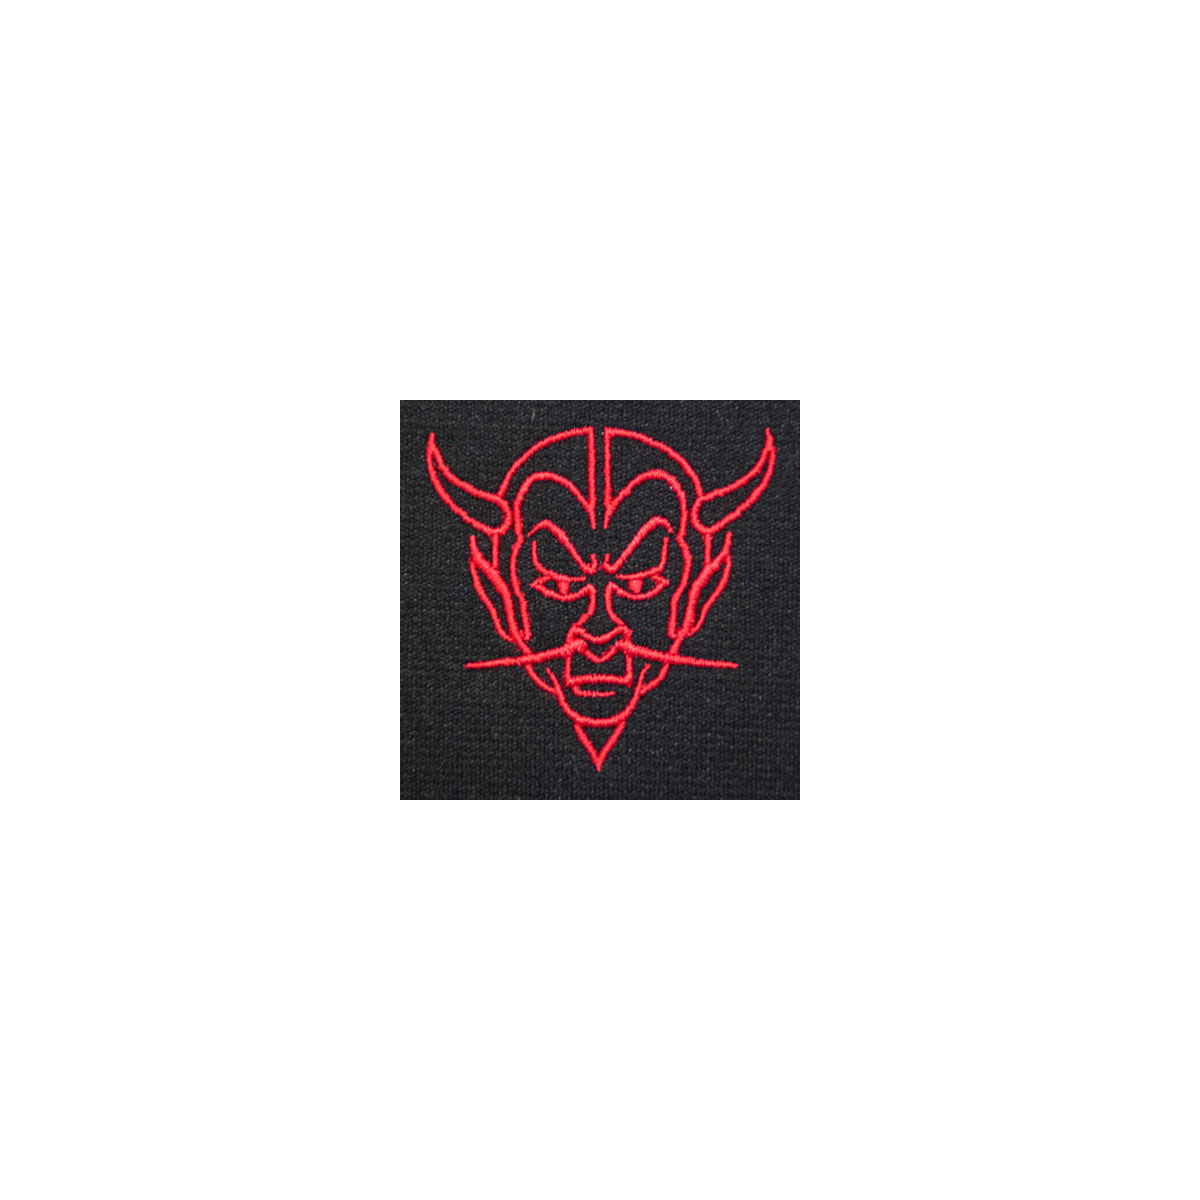 Devil Monogram Mascot (MM106)